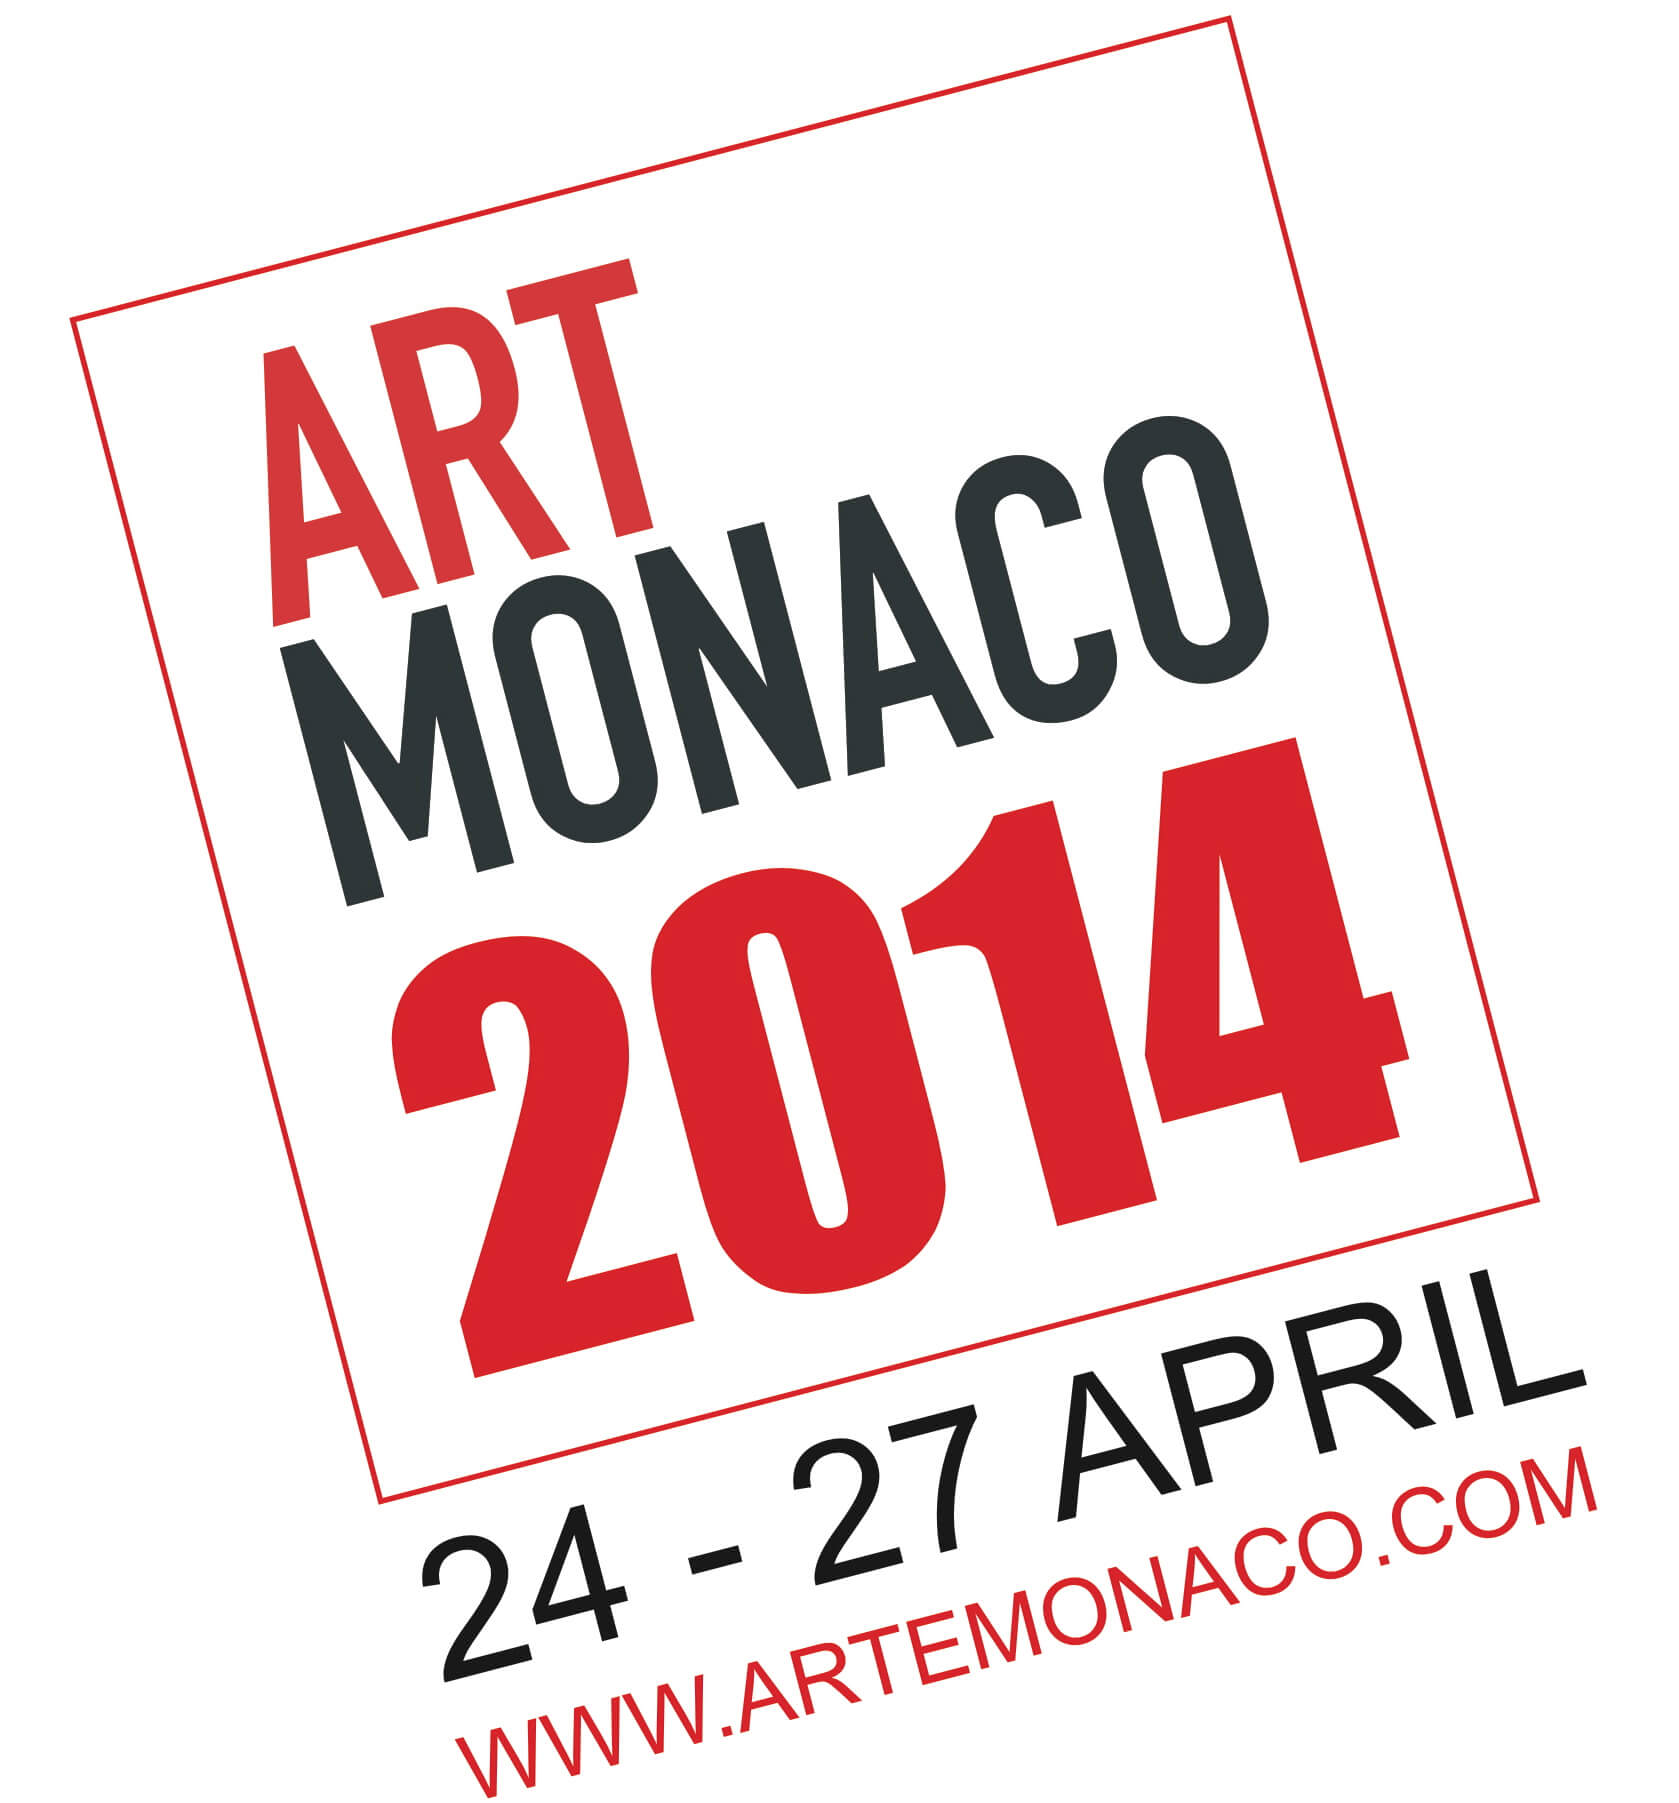 Art Monaco 2014